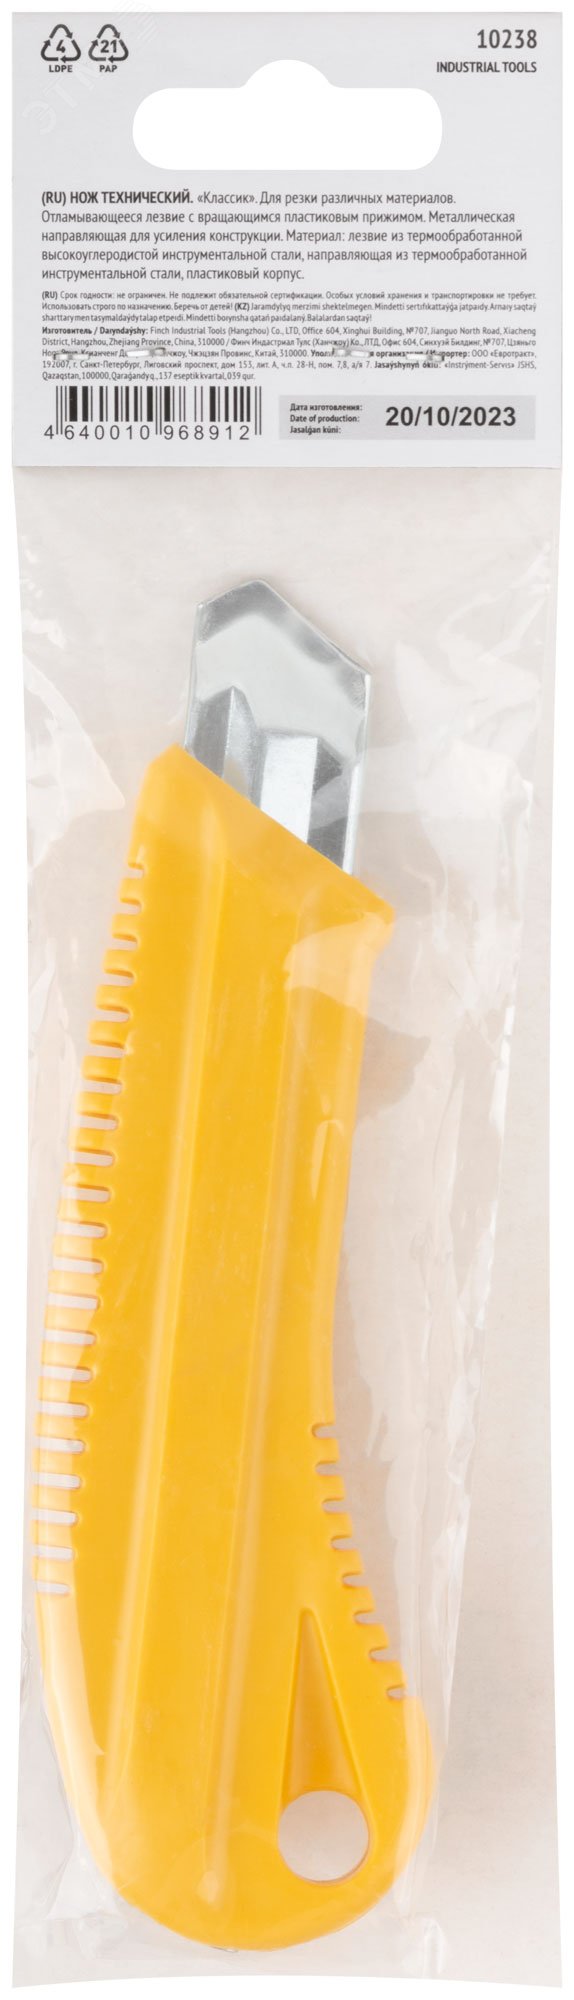 Нож технический 18 мм усиленный пластиковый, вращ прижим 10238 FIT - превью 4